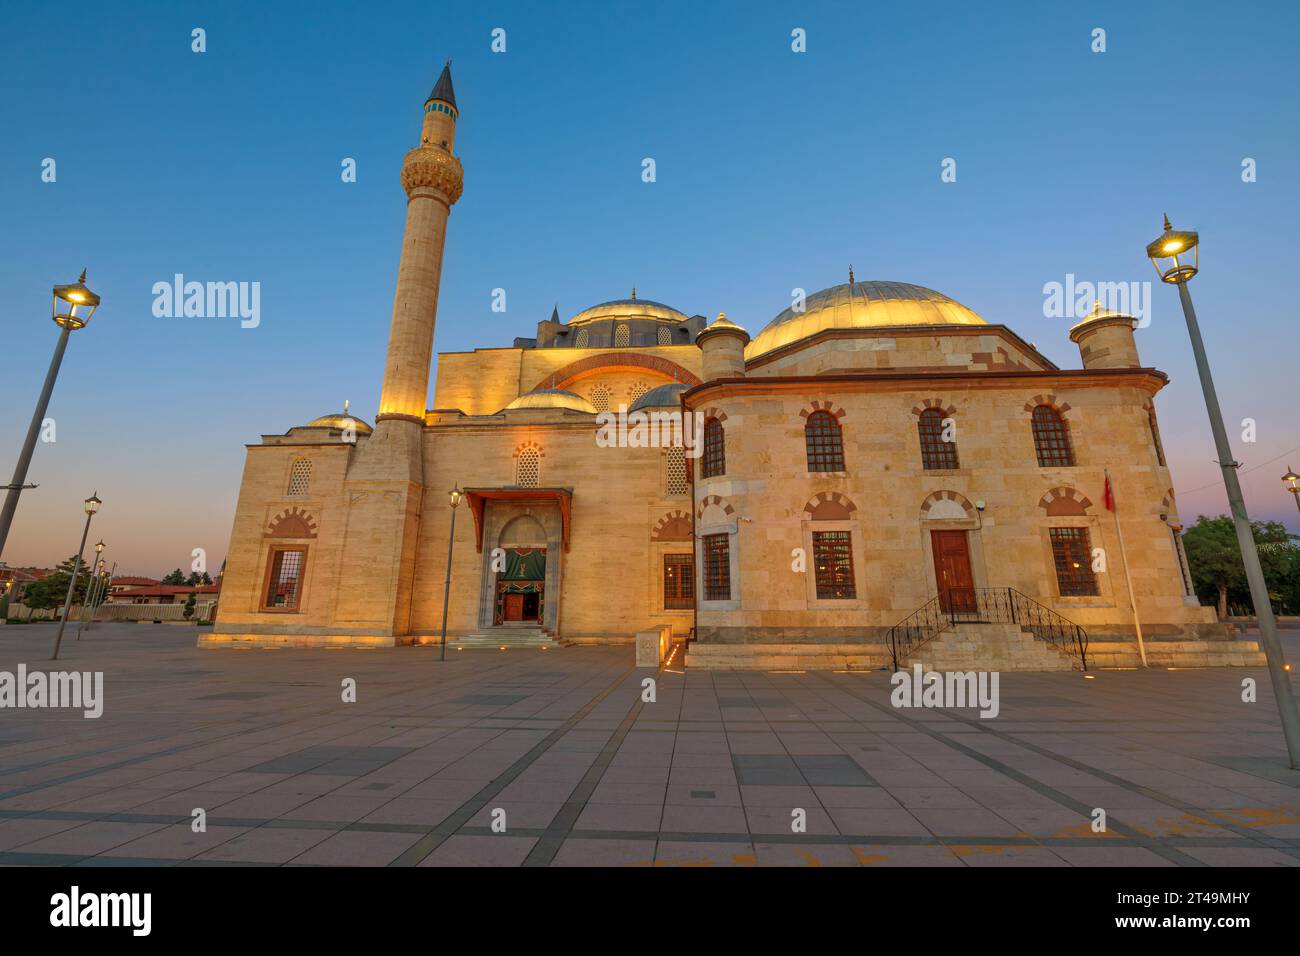 L'extérieur de la mosquée Selimiye présente le style architectural ottoman classique, avec des dômes gracieux et d'imposants minarets qui atteignent le ciel Banque D'Images